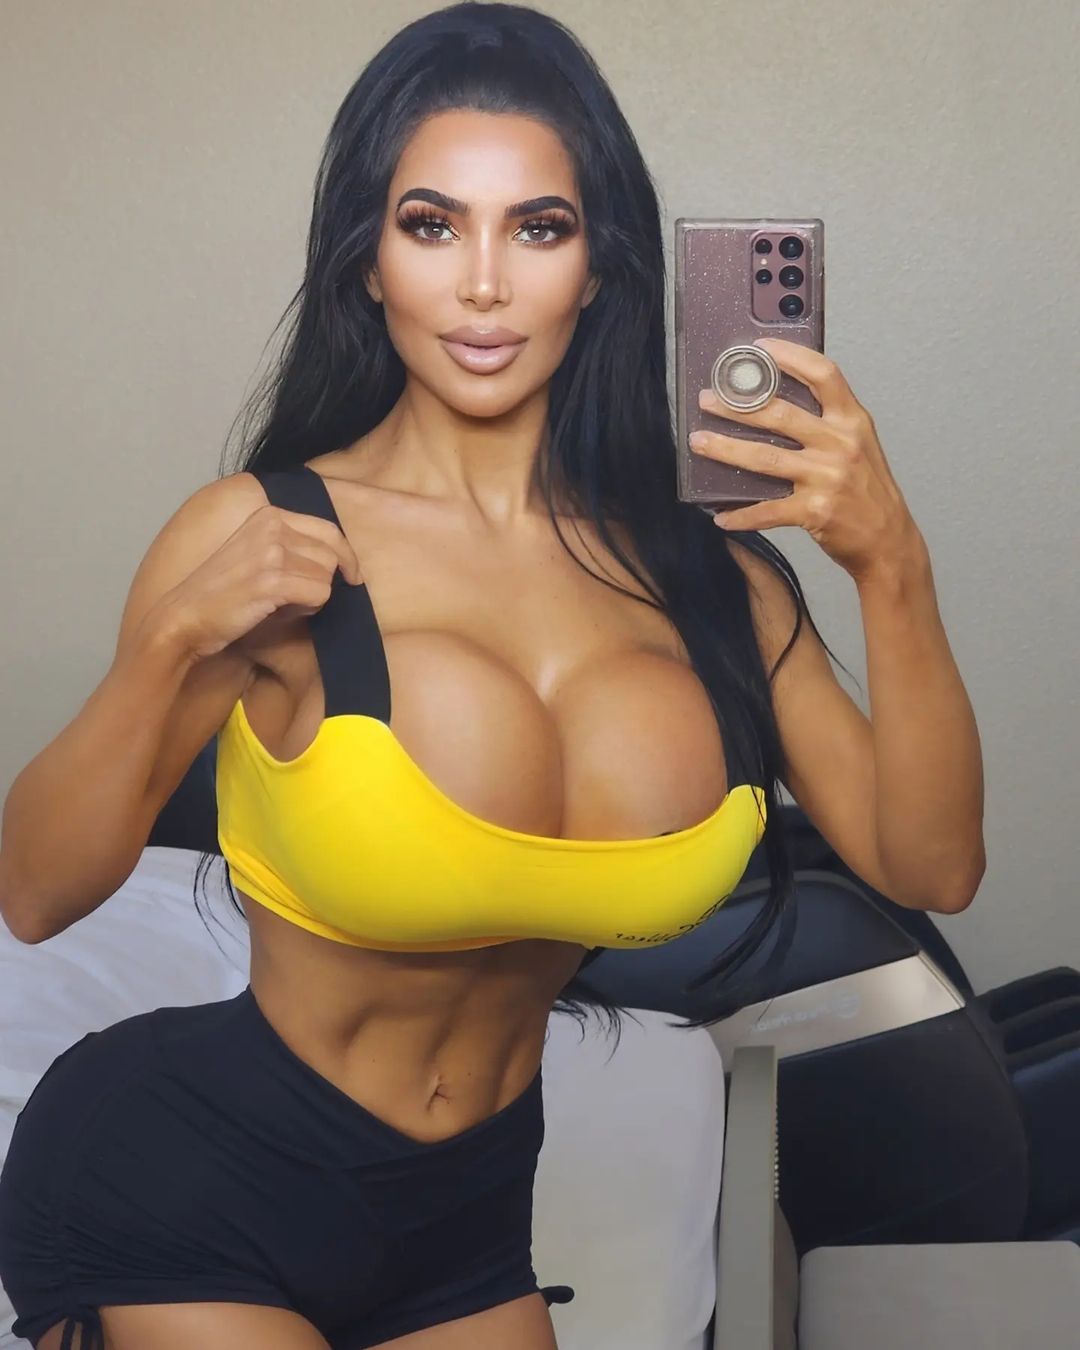 arshad jahangir add kim kardashian pornstar lookalike photo